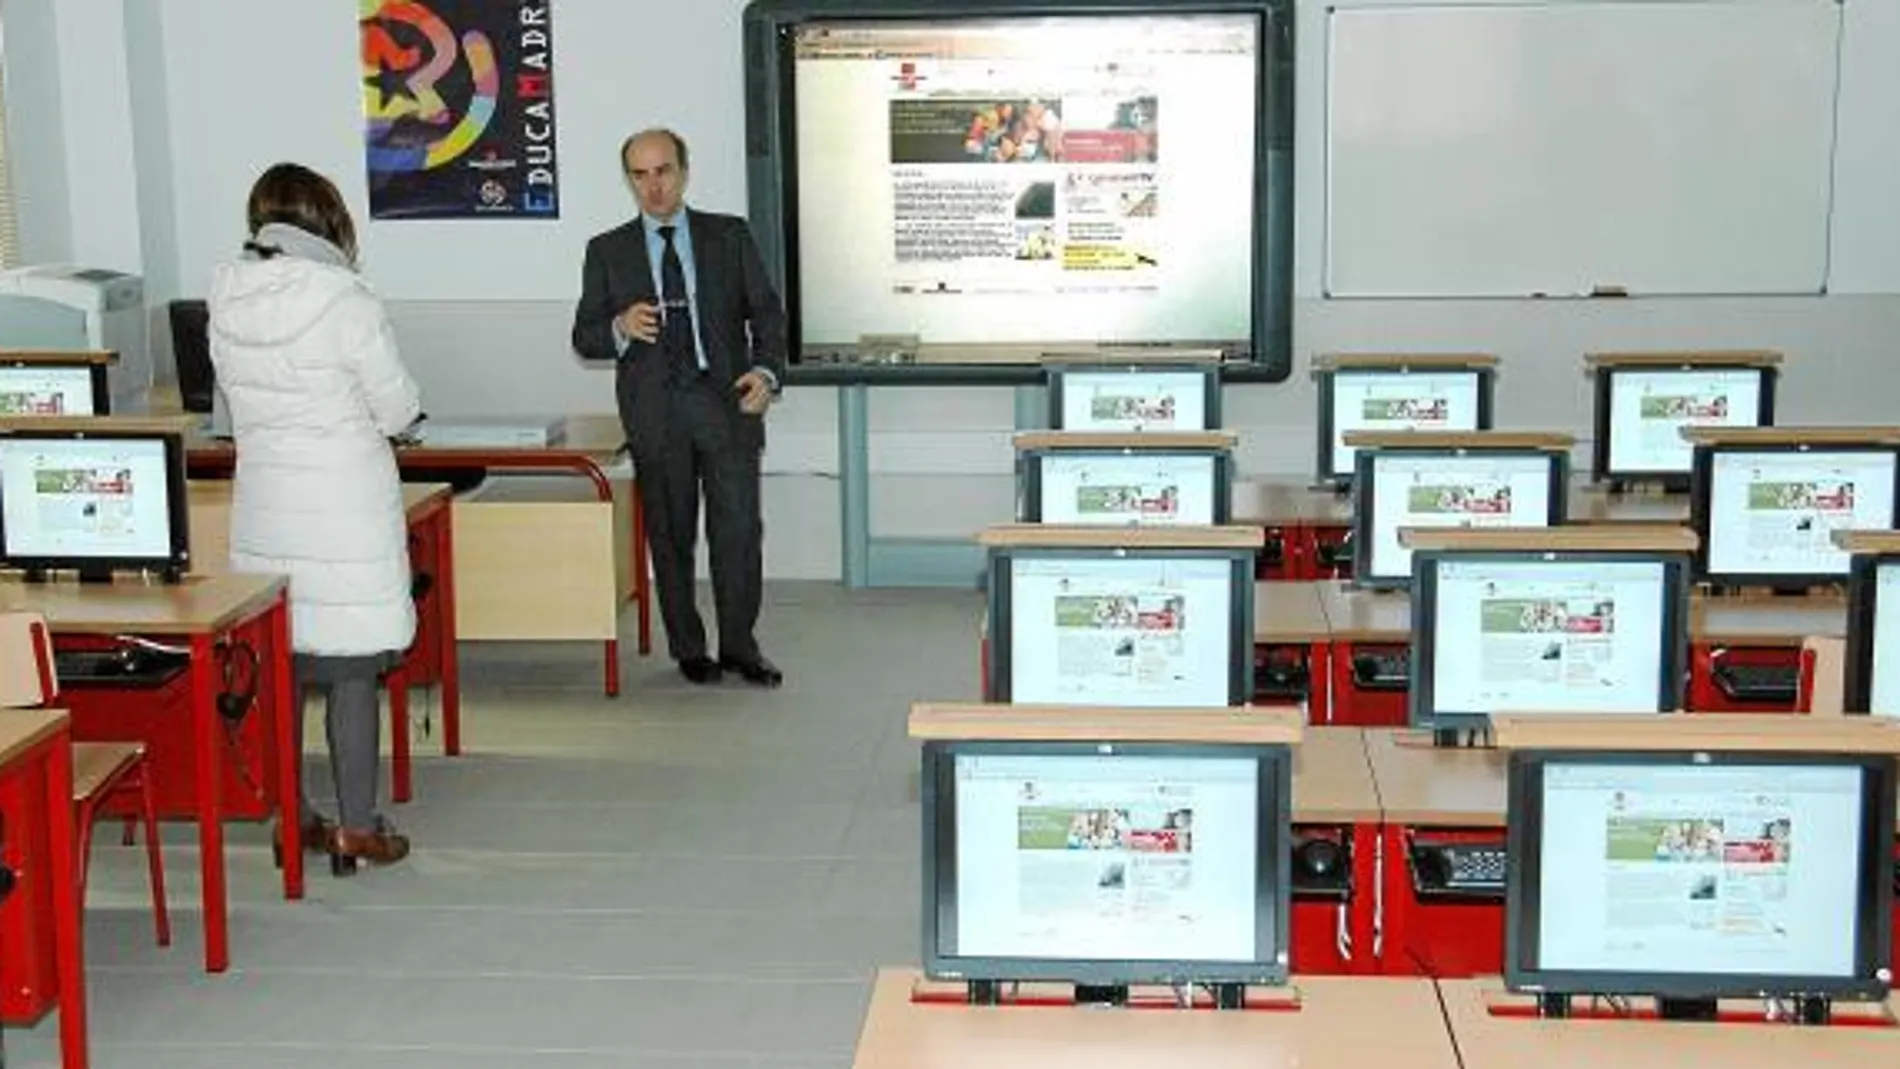 El profesor tendrá un ordenador con dos pantallas, una conectada a las de los alumnos y otra a la pizarra digital